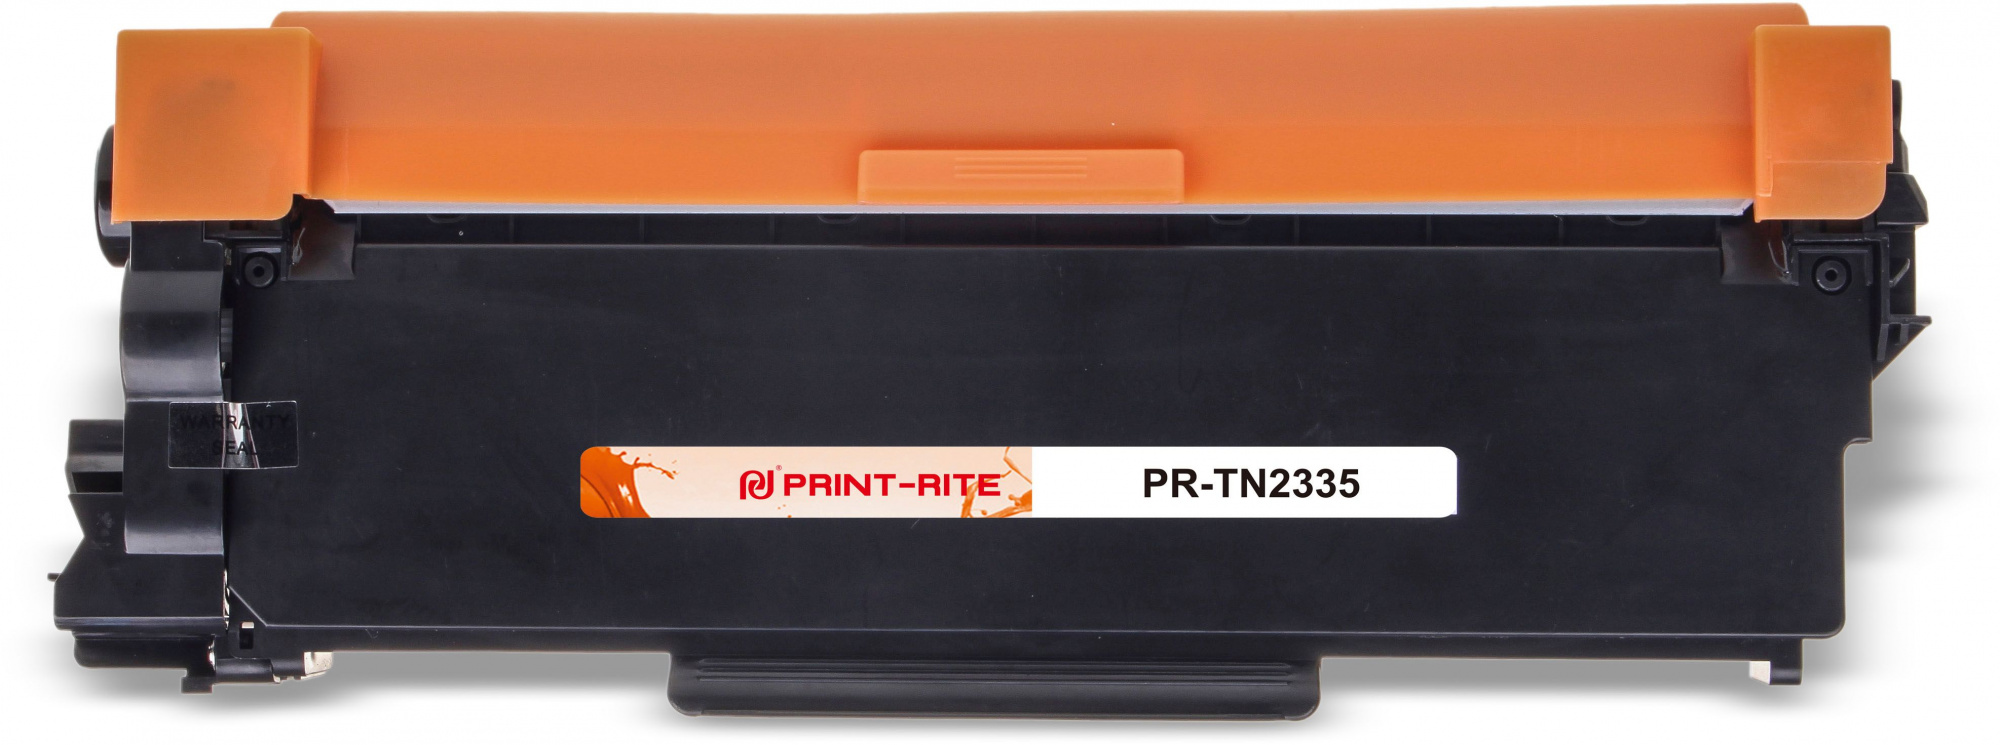   Print-Rite TFBAEJBPU1J PR-TN2335 TN-2335  (1200.)  Brother DCP L2500/L2520/L2540/L2560